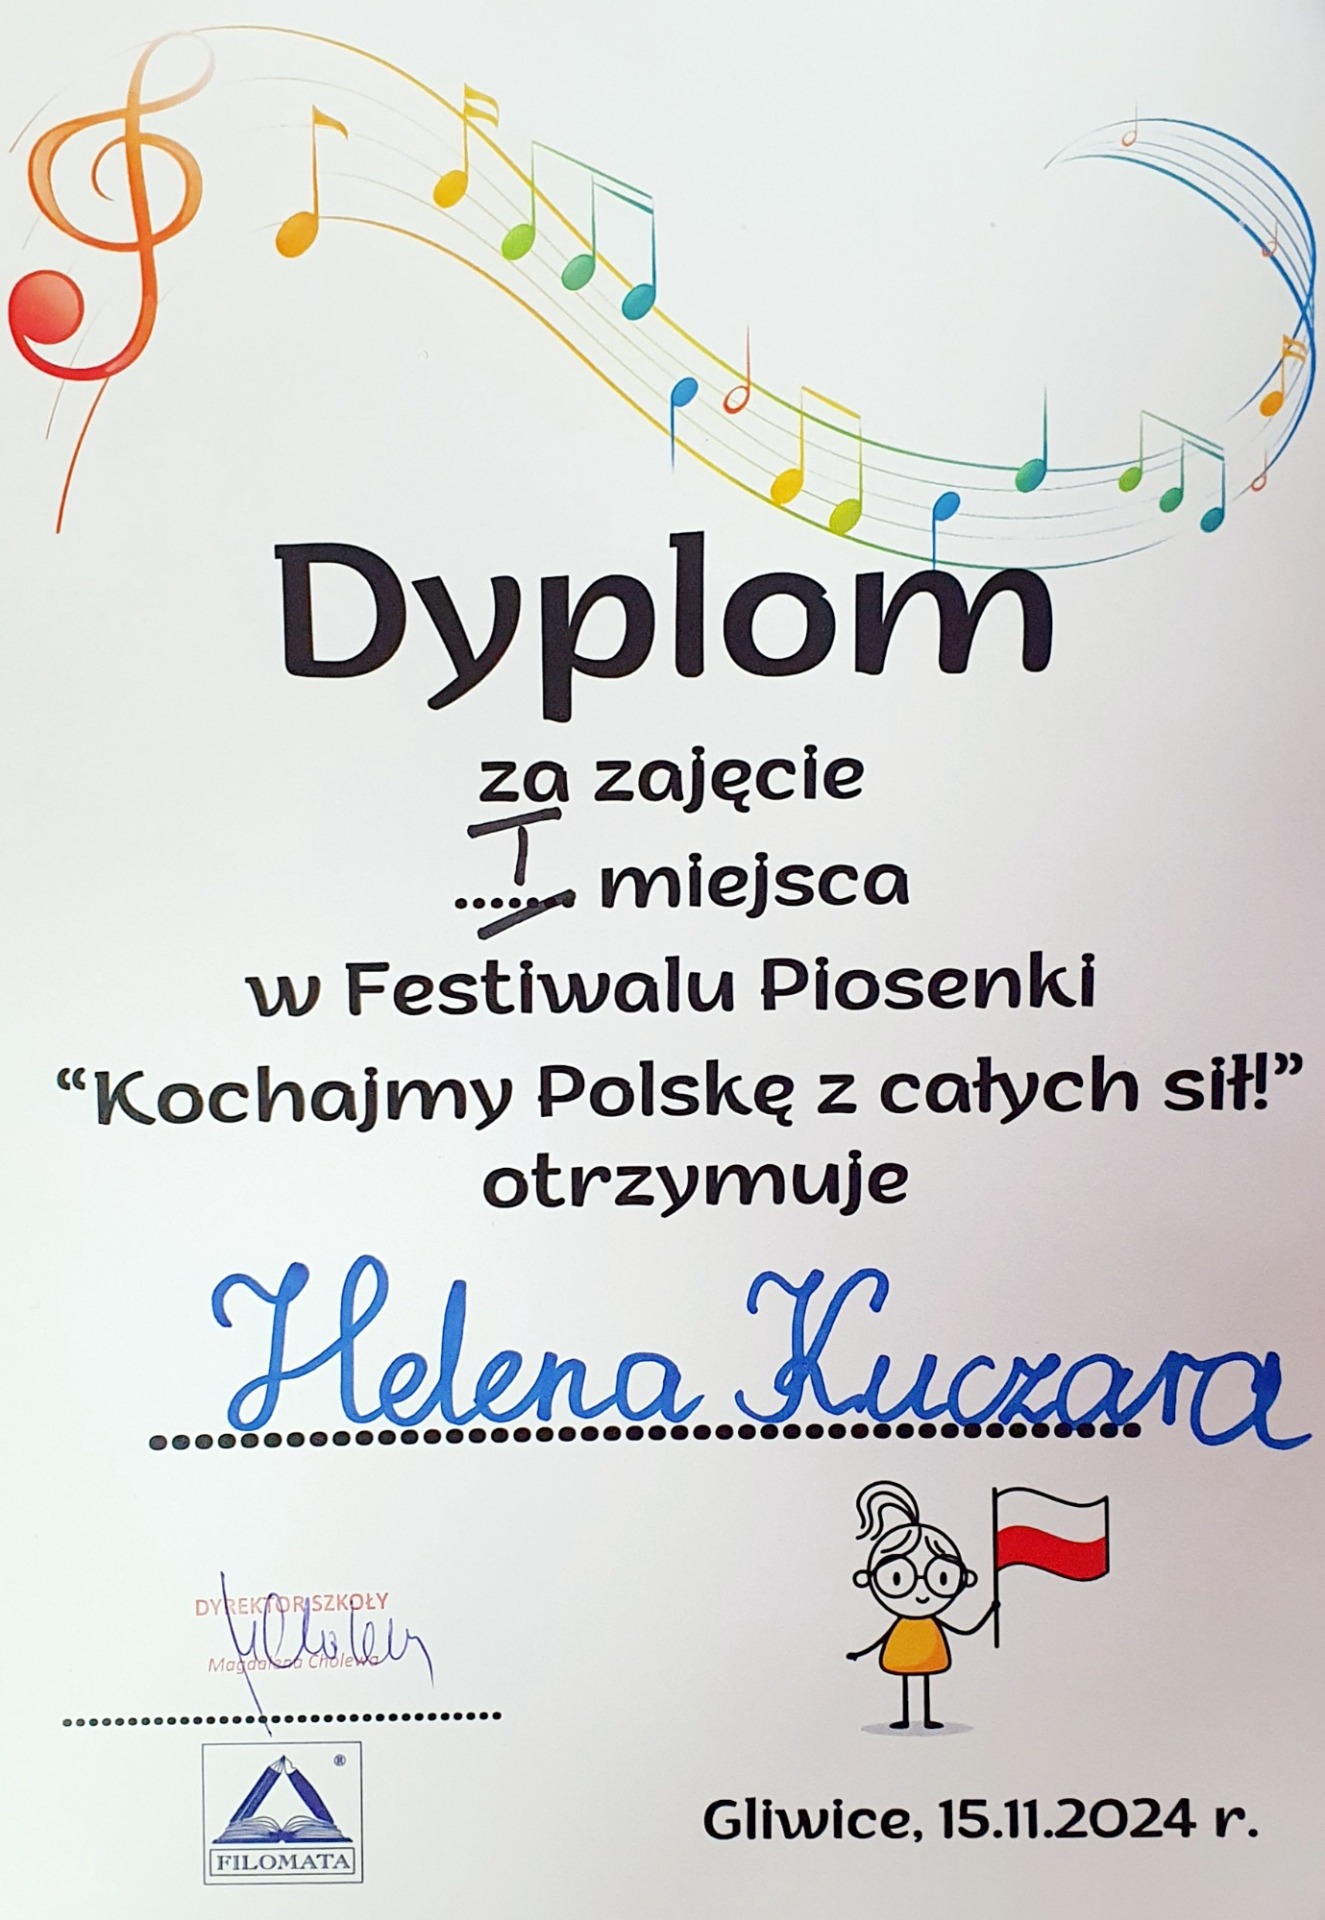 Festiwal Piosenki "Kochajmy Polskę z całych sił!" - Obrazek 1